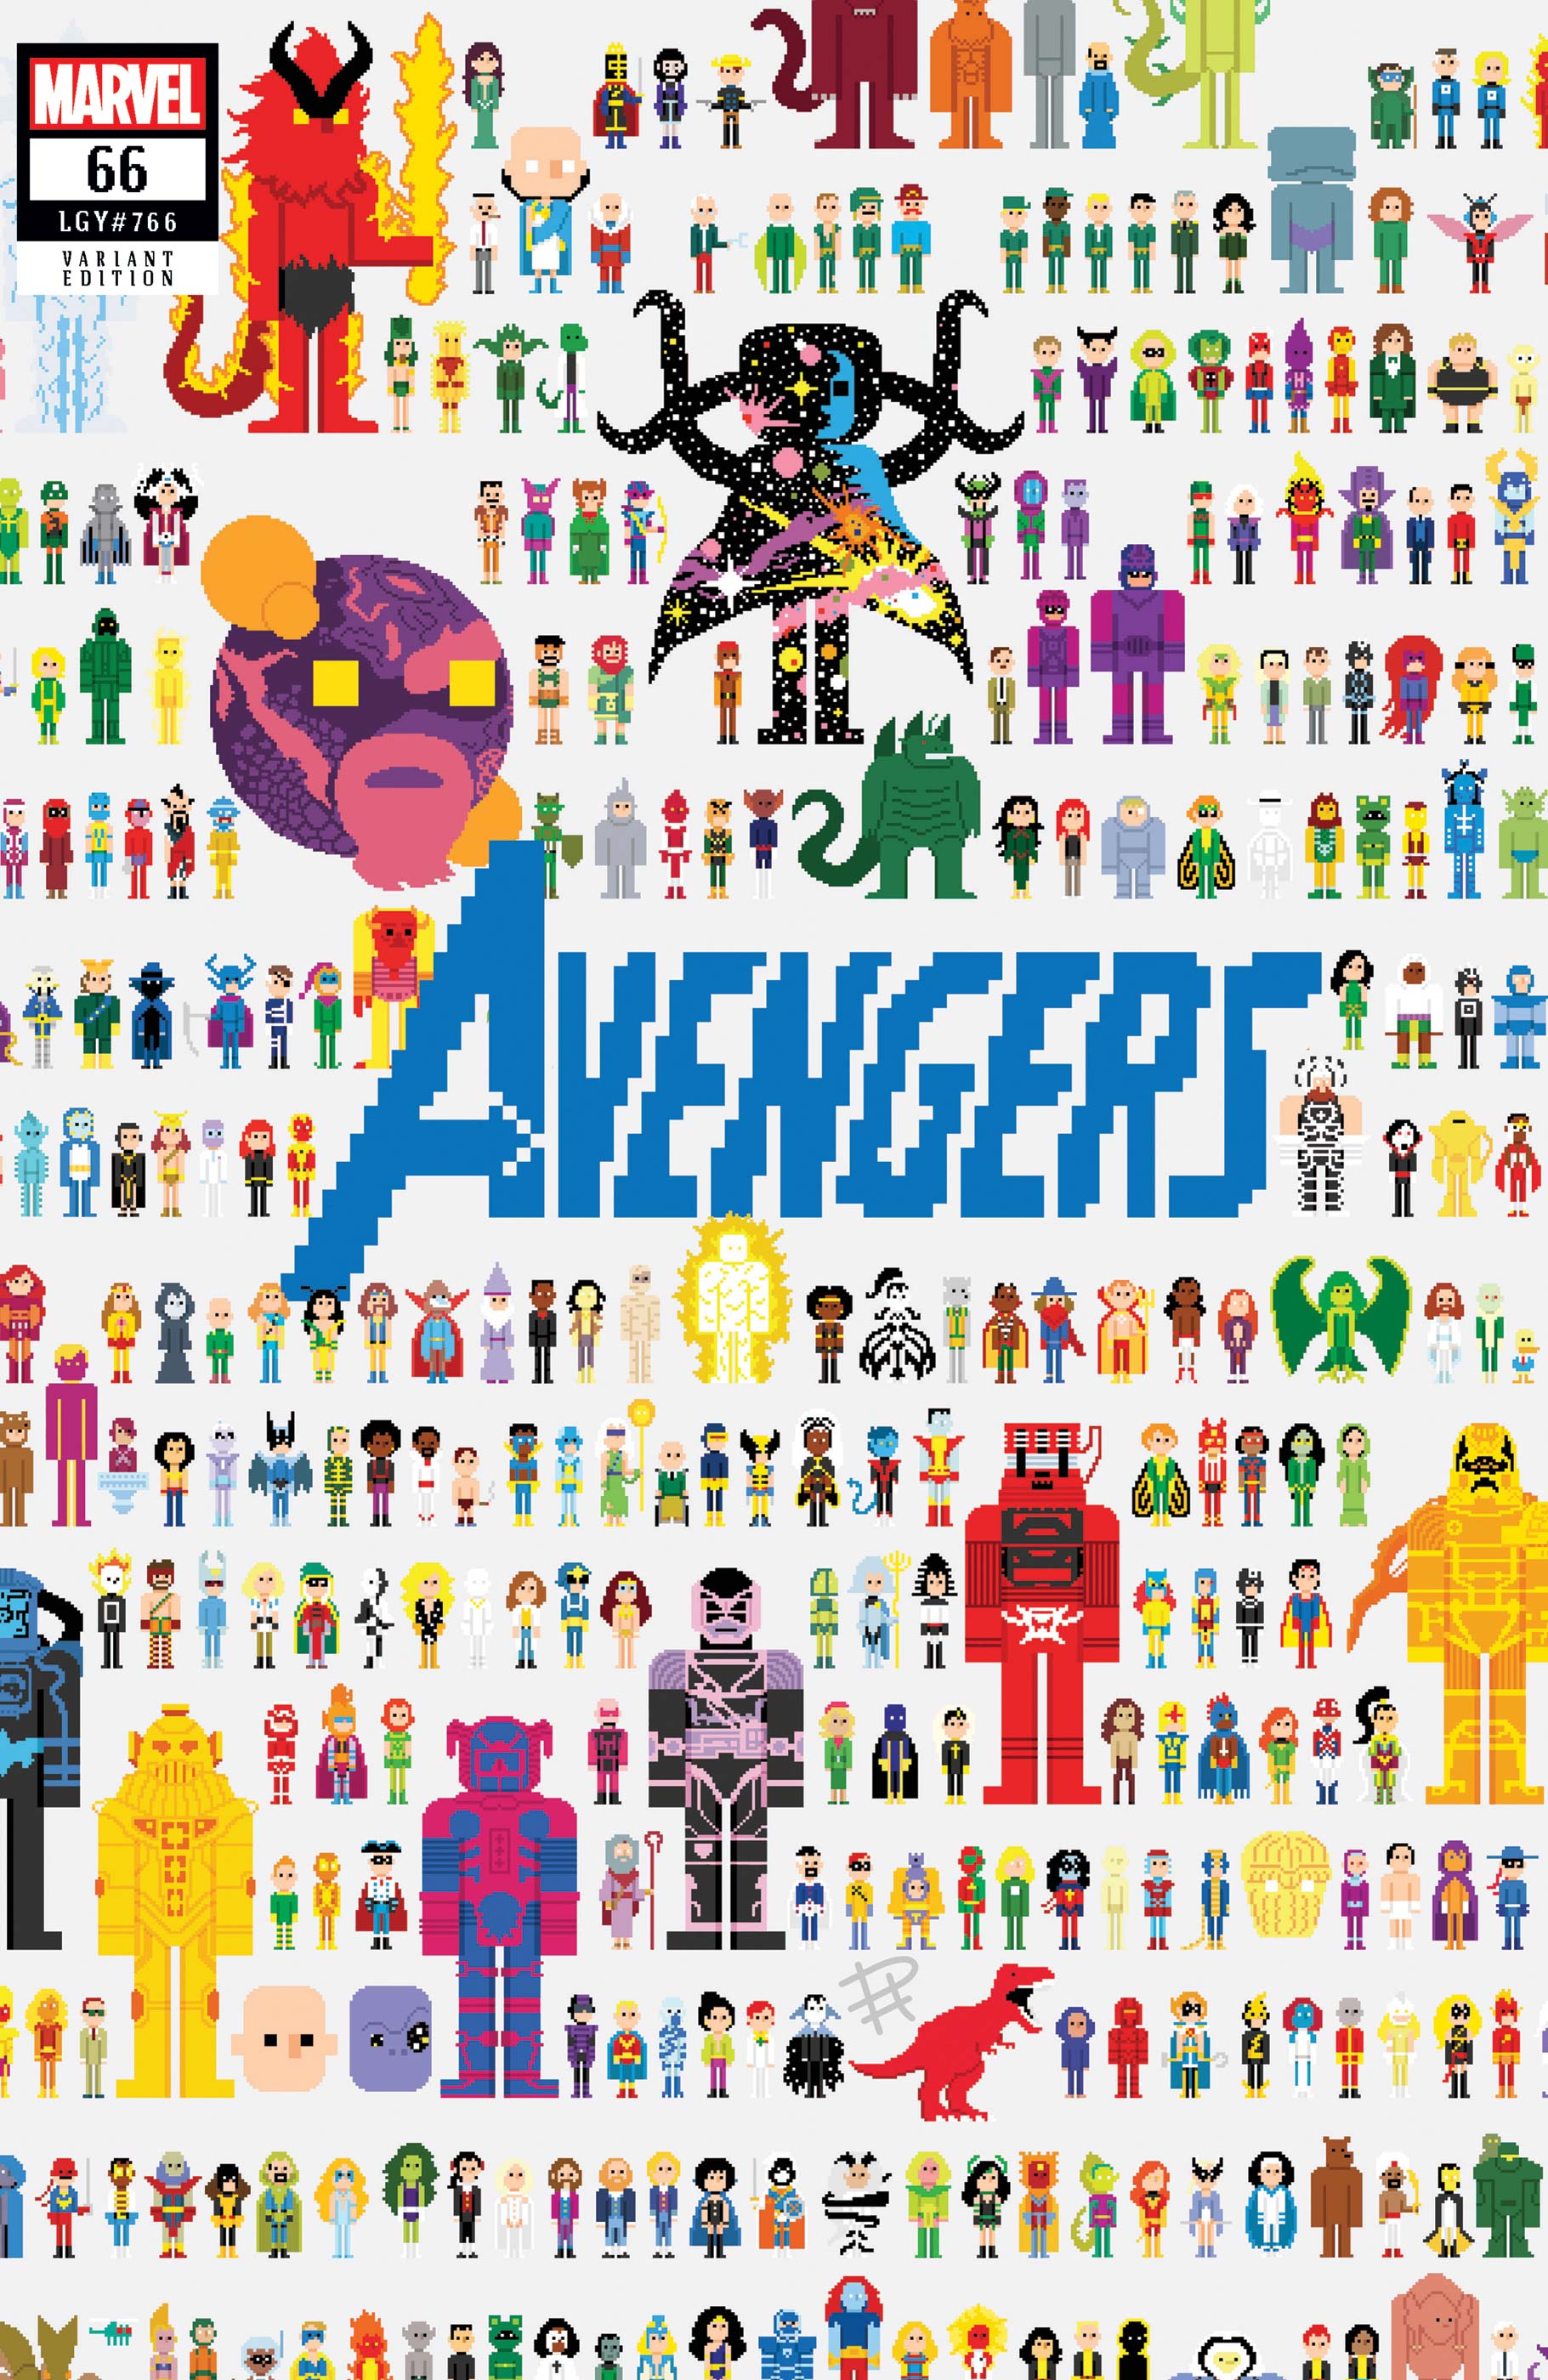 Avengers (2018) #66 (Variant)